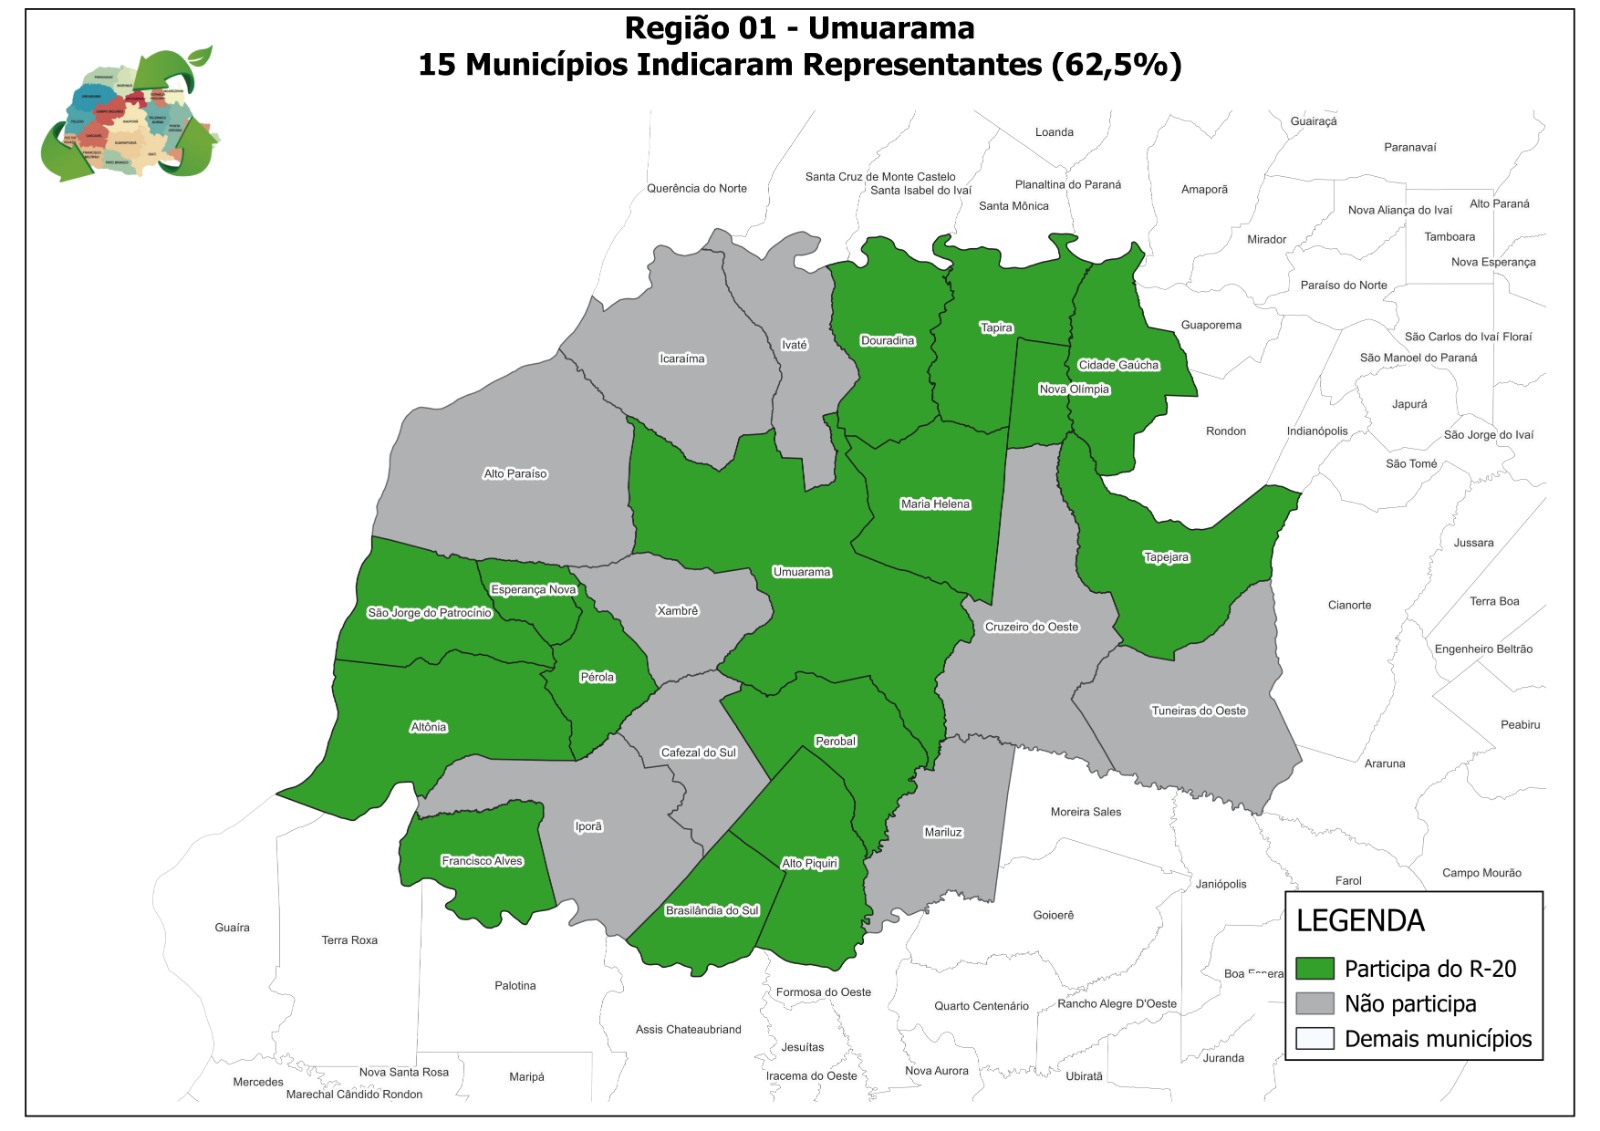 Mapa da região de Umuarama